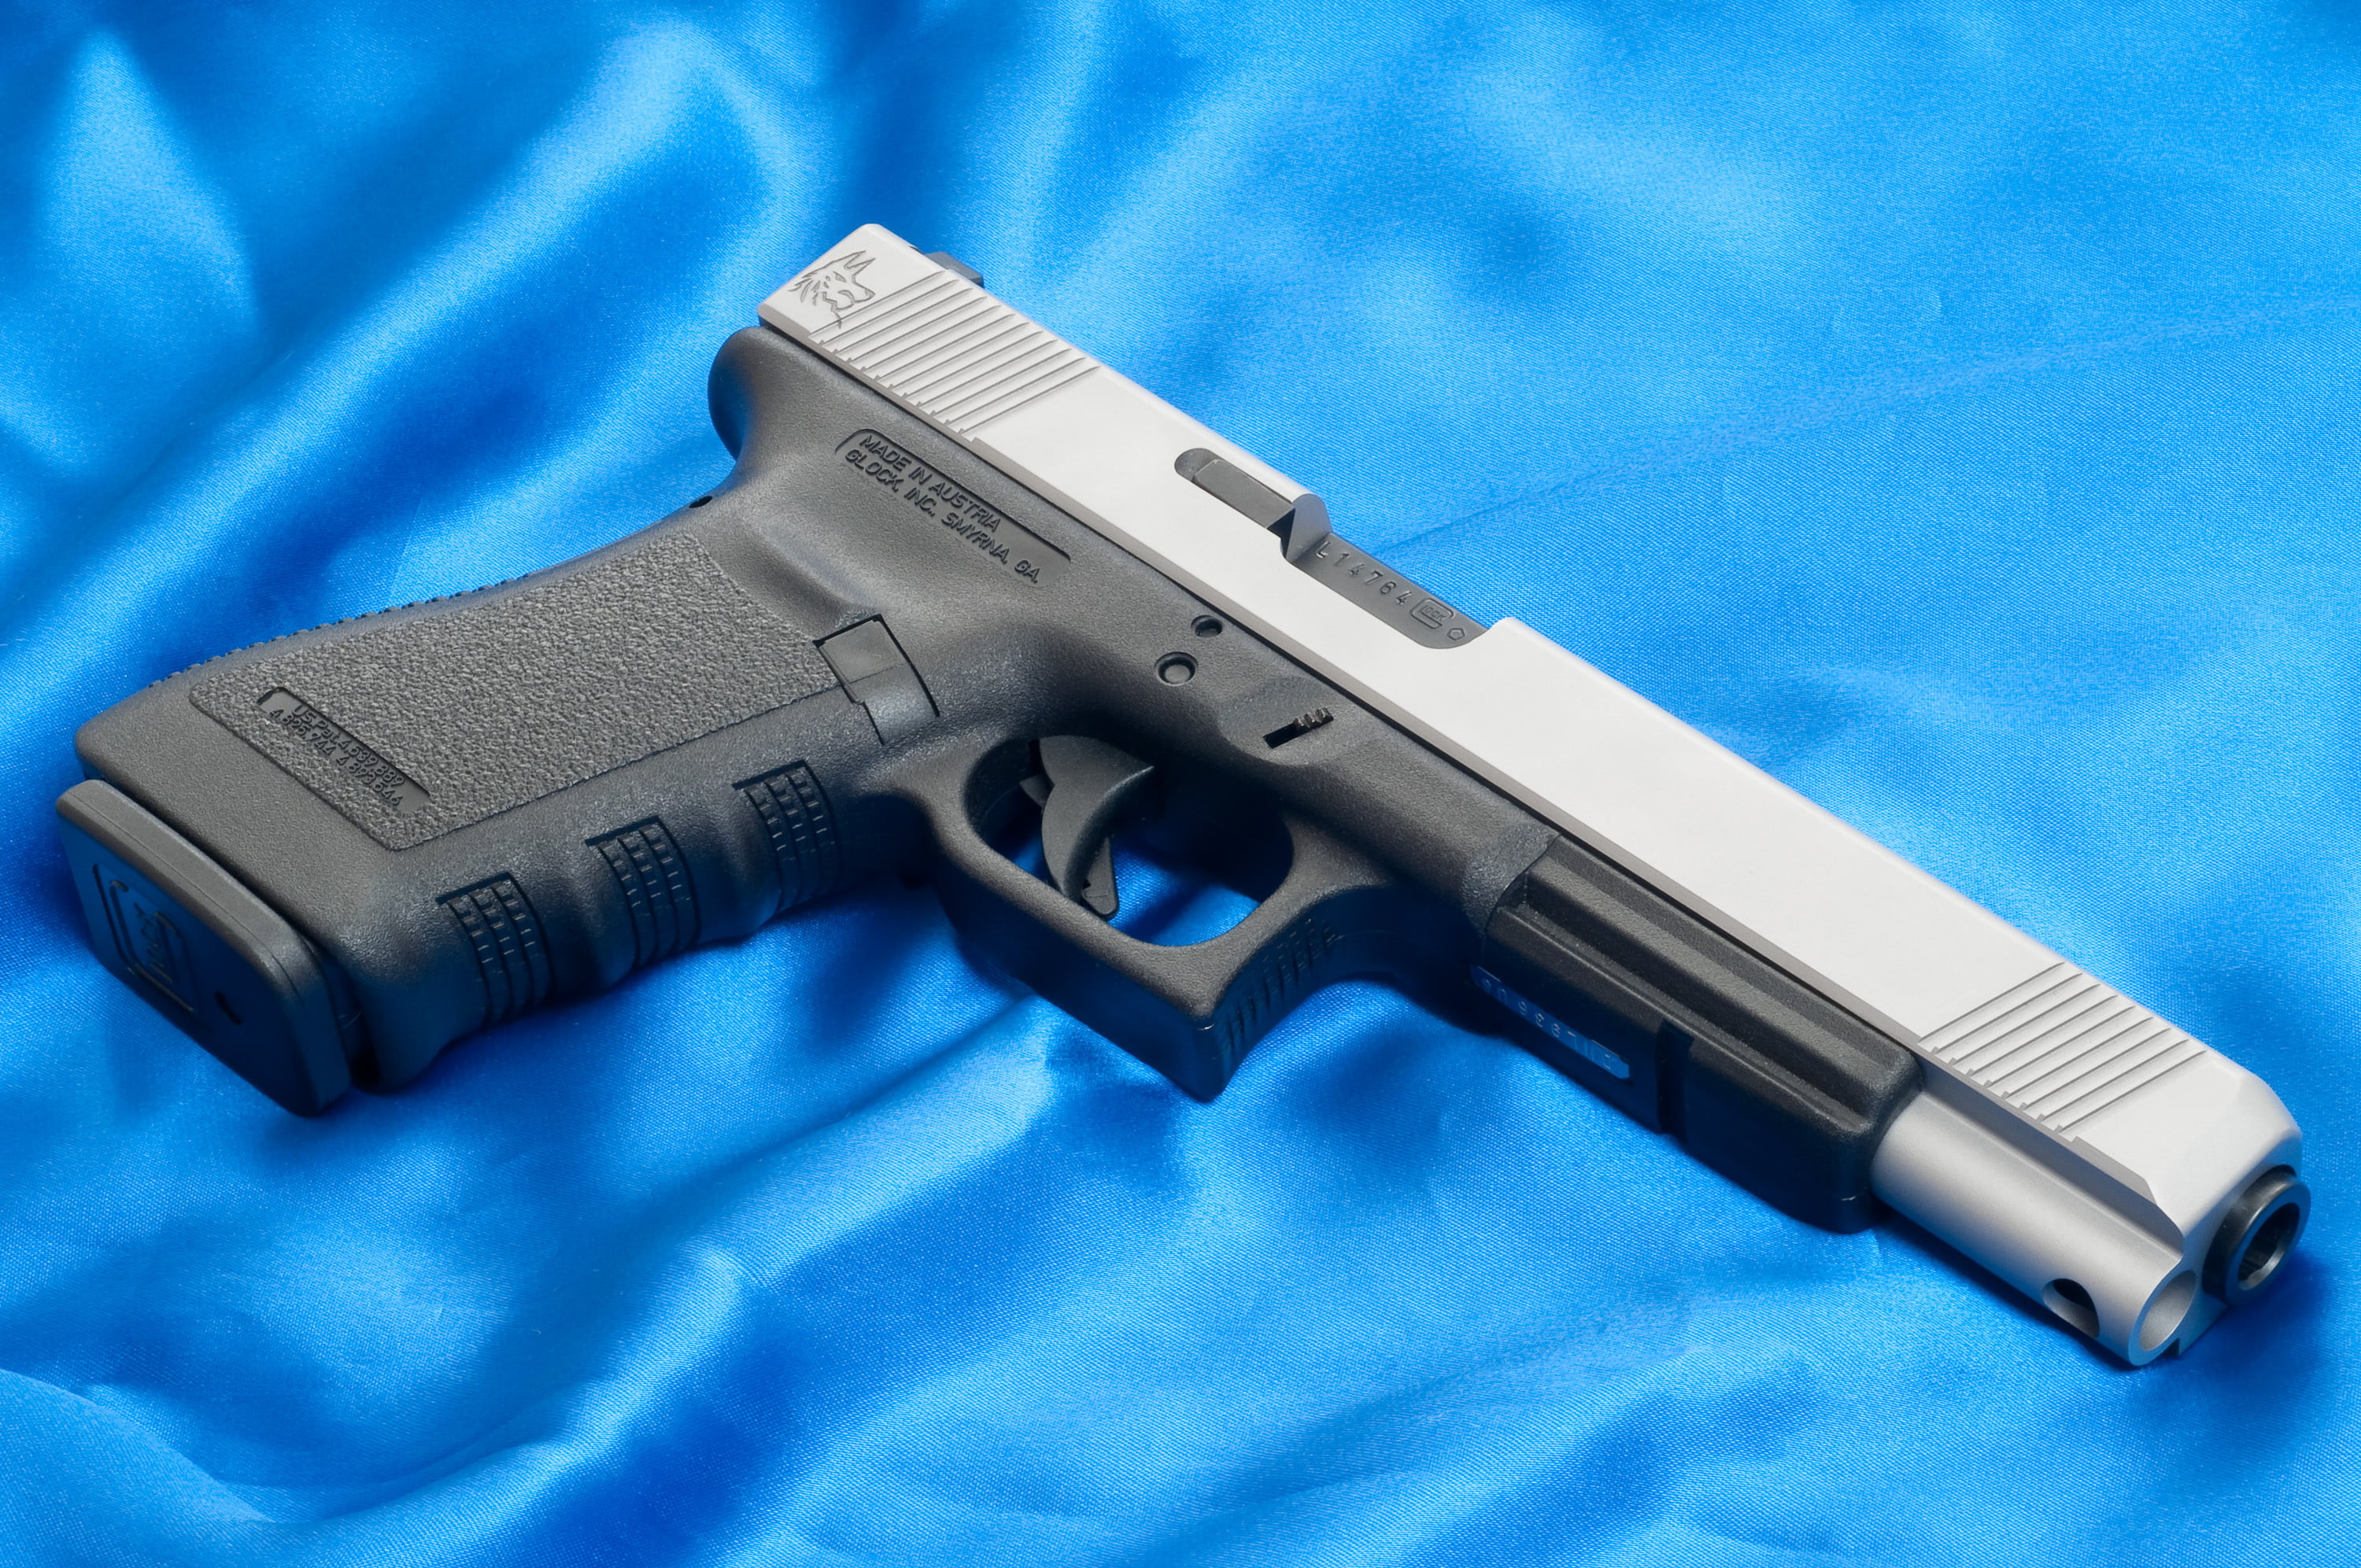 black and gray semi-automatic pistol, Blue, Gun, Austria, Wallpaper